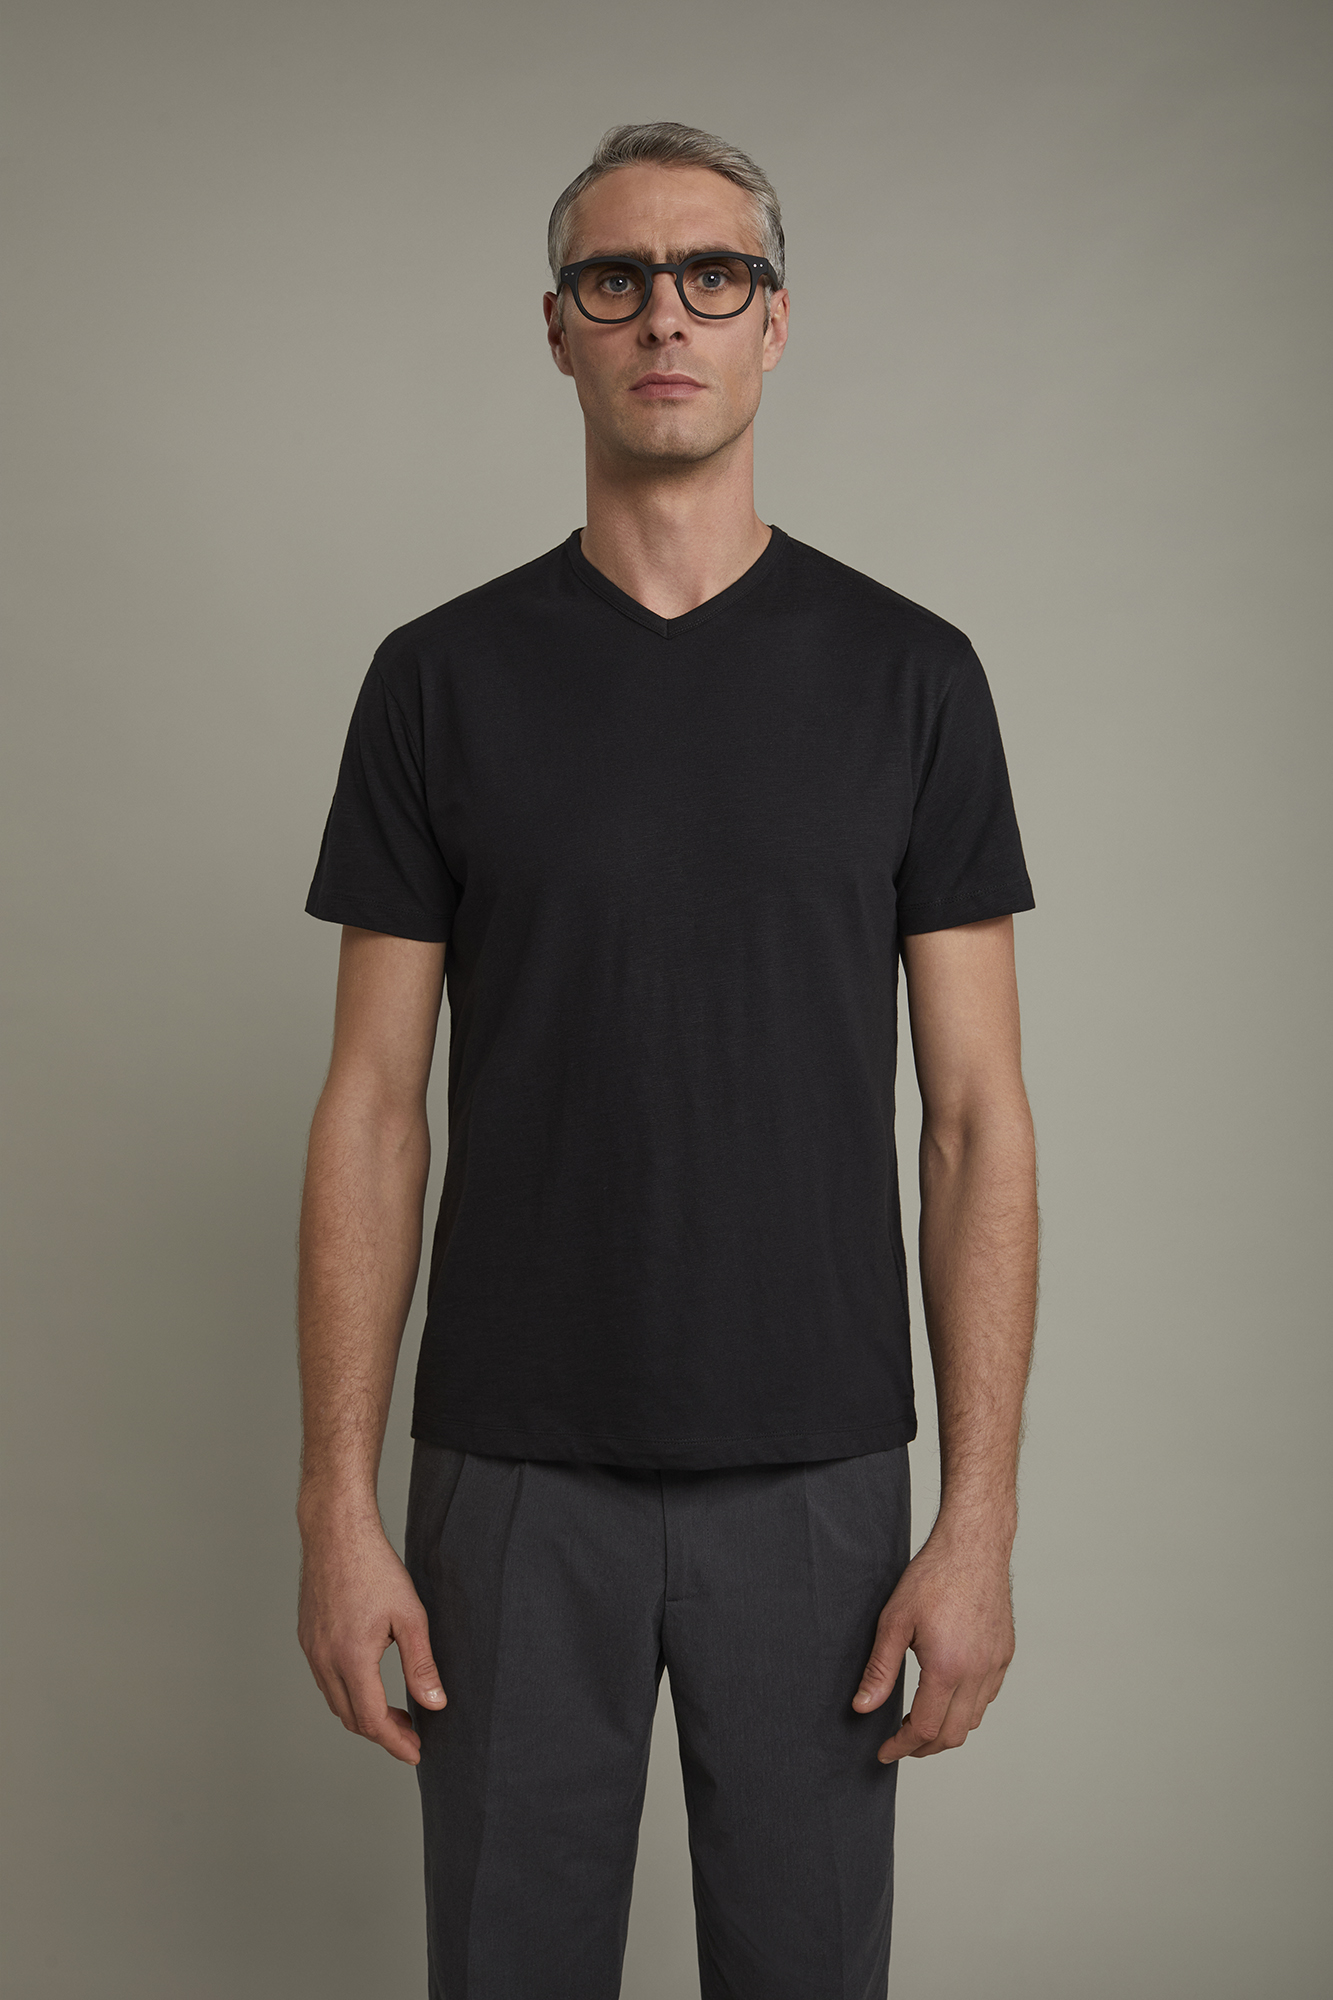 Men’s v-neck t-shirt 100% cotton flamed effect regular fit image number null